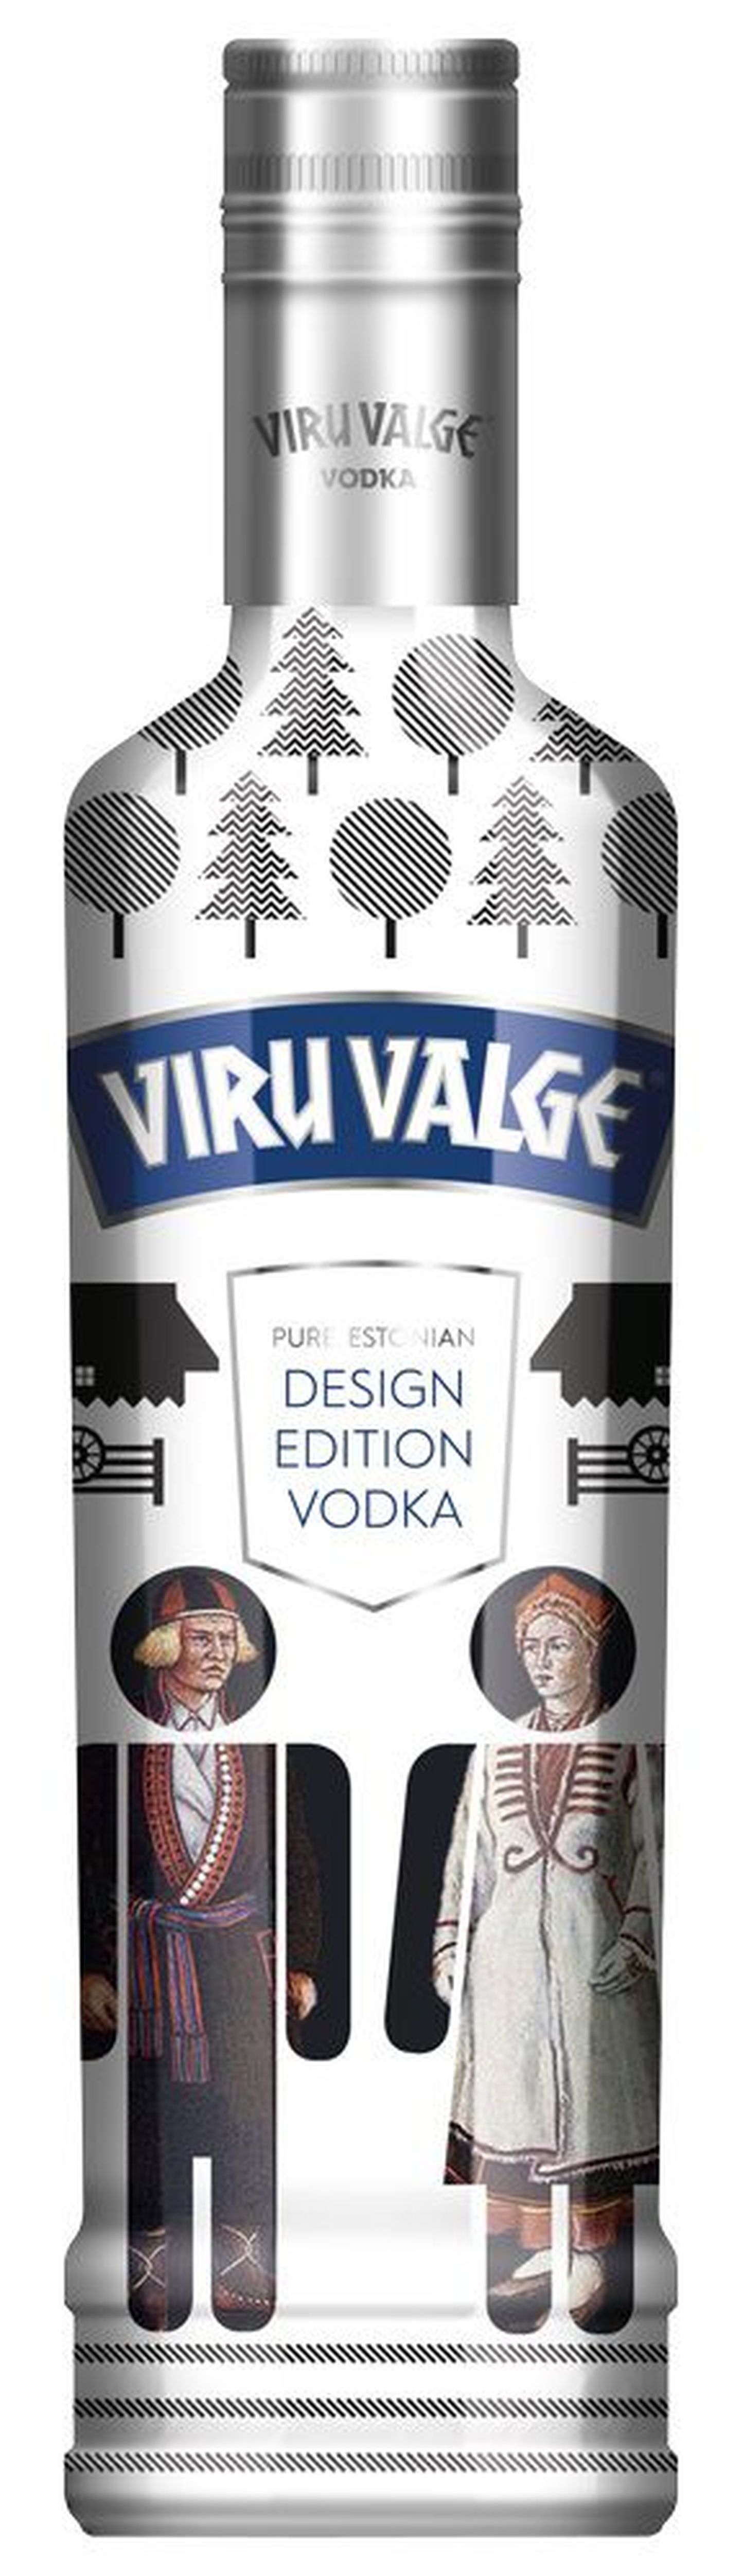 AS Liviko avalikustas täna Viru Valge disainikonkursile 414-st esitatud kujundustööst 20 finaali jõudnud kavandit.